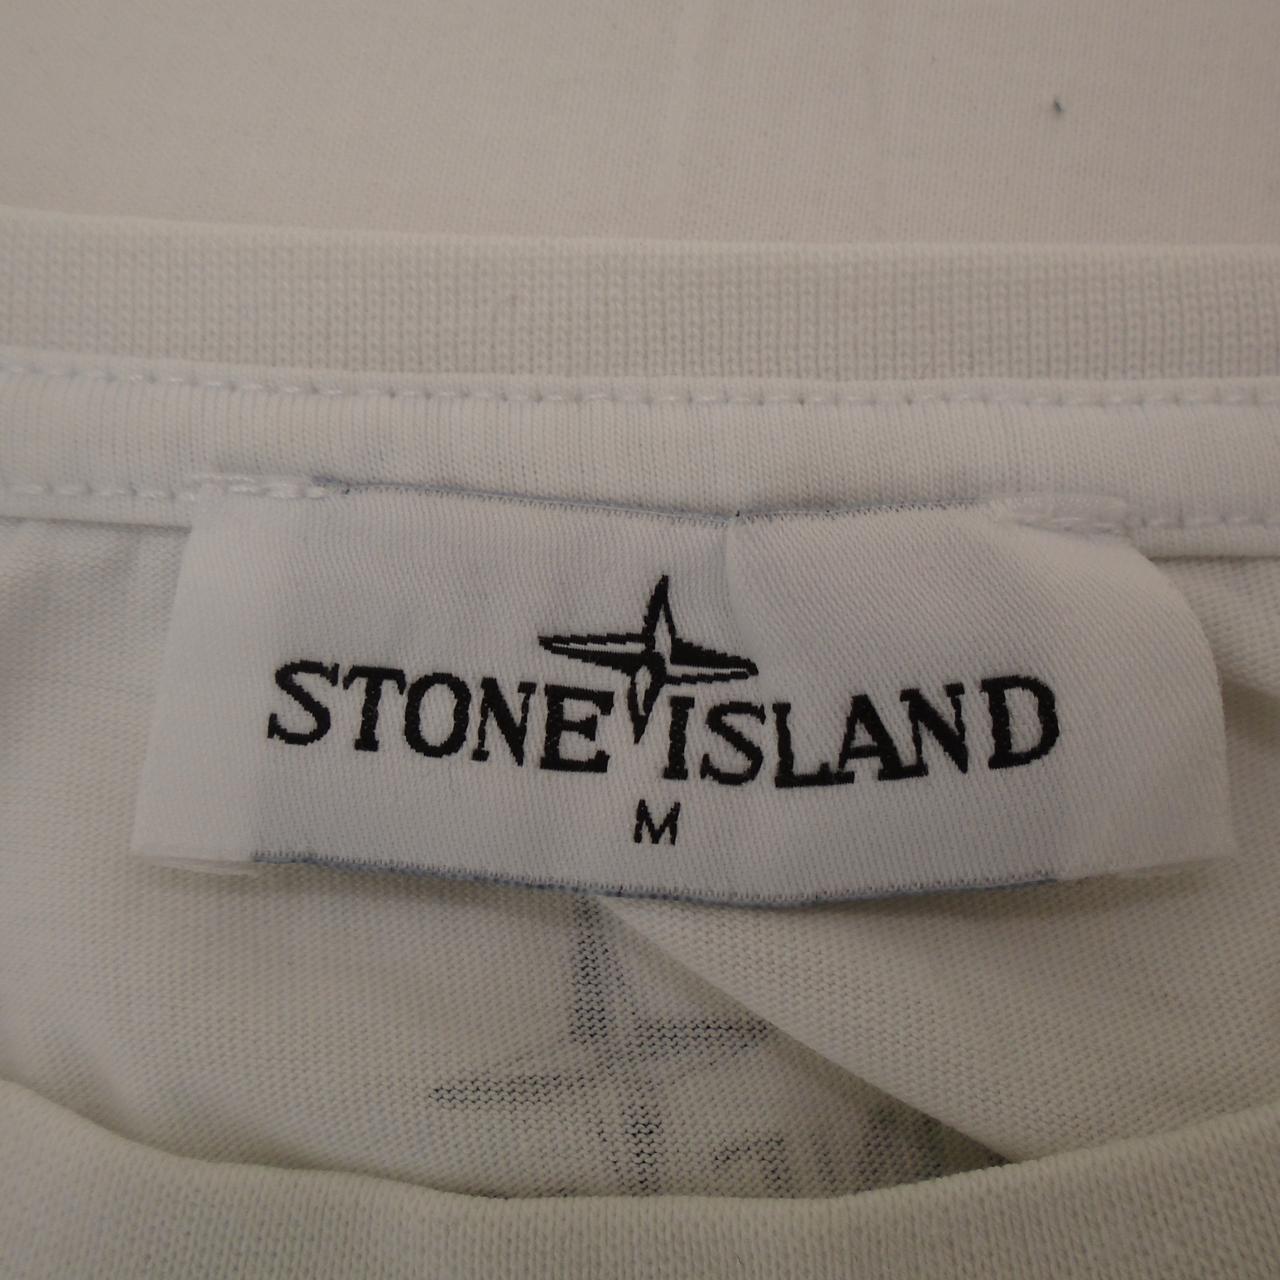 Herren-T-Shirt Stone Island. Weiß. M. Gebraucht. Sehr gut